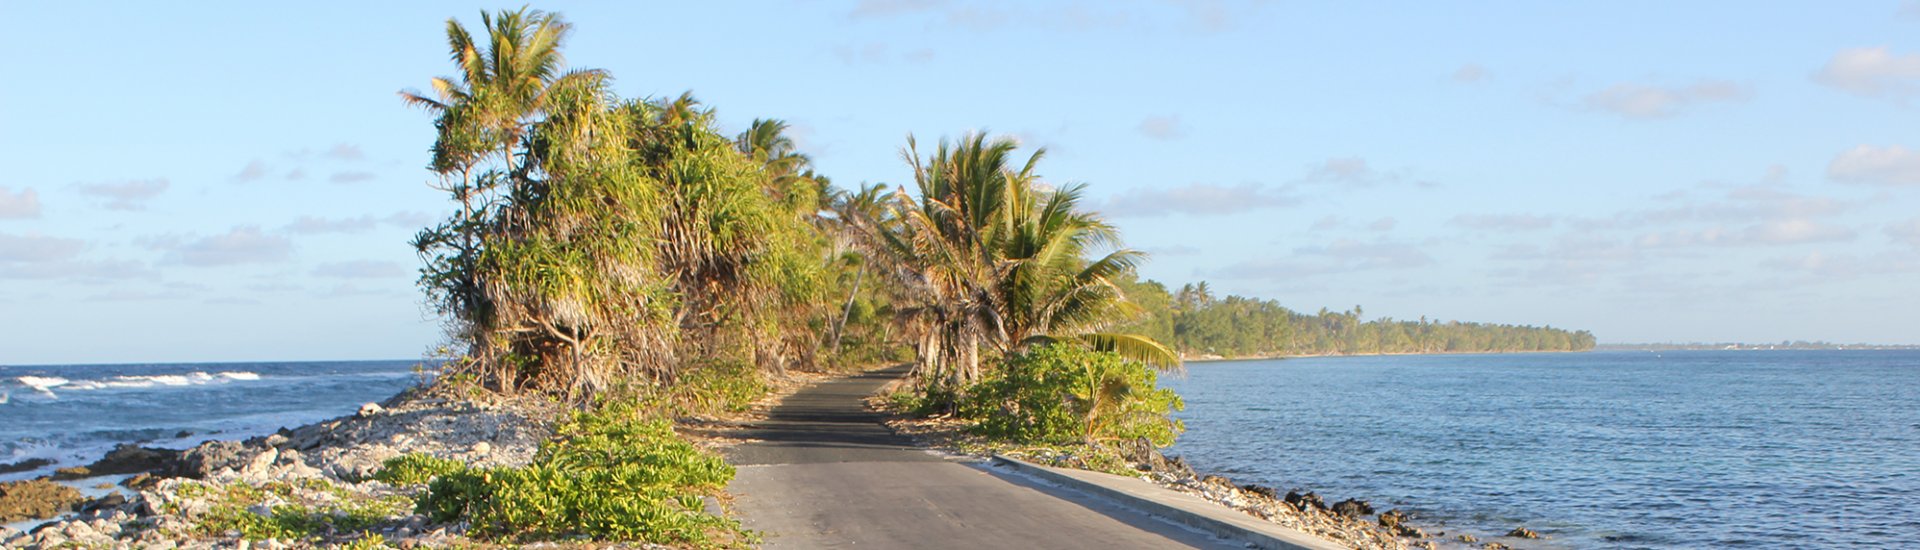 Het land Tuvalu in de Stille Oceaan bestaat uit meerdere atollen. Bij zeespiegelstijging door klimaatverandering lopen deze direct gevaar. (Foto: DFAT | CC/Flickr.com)